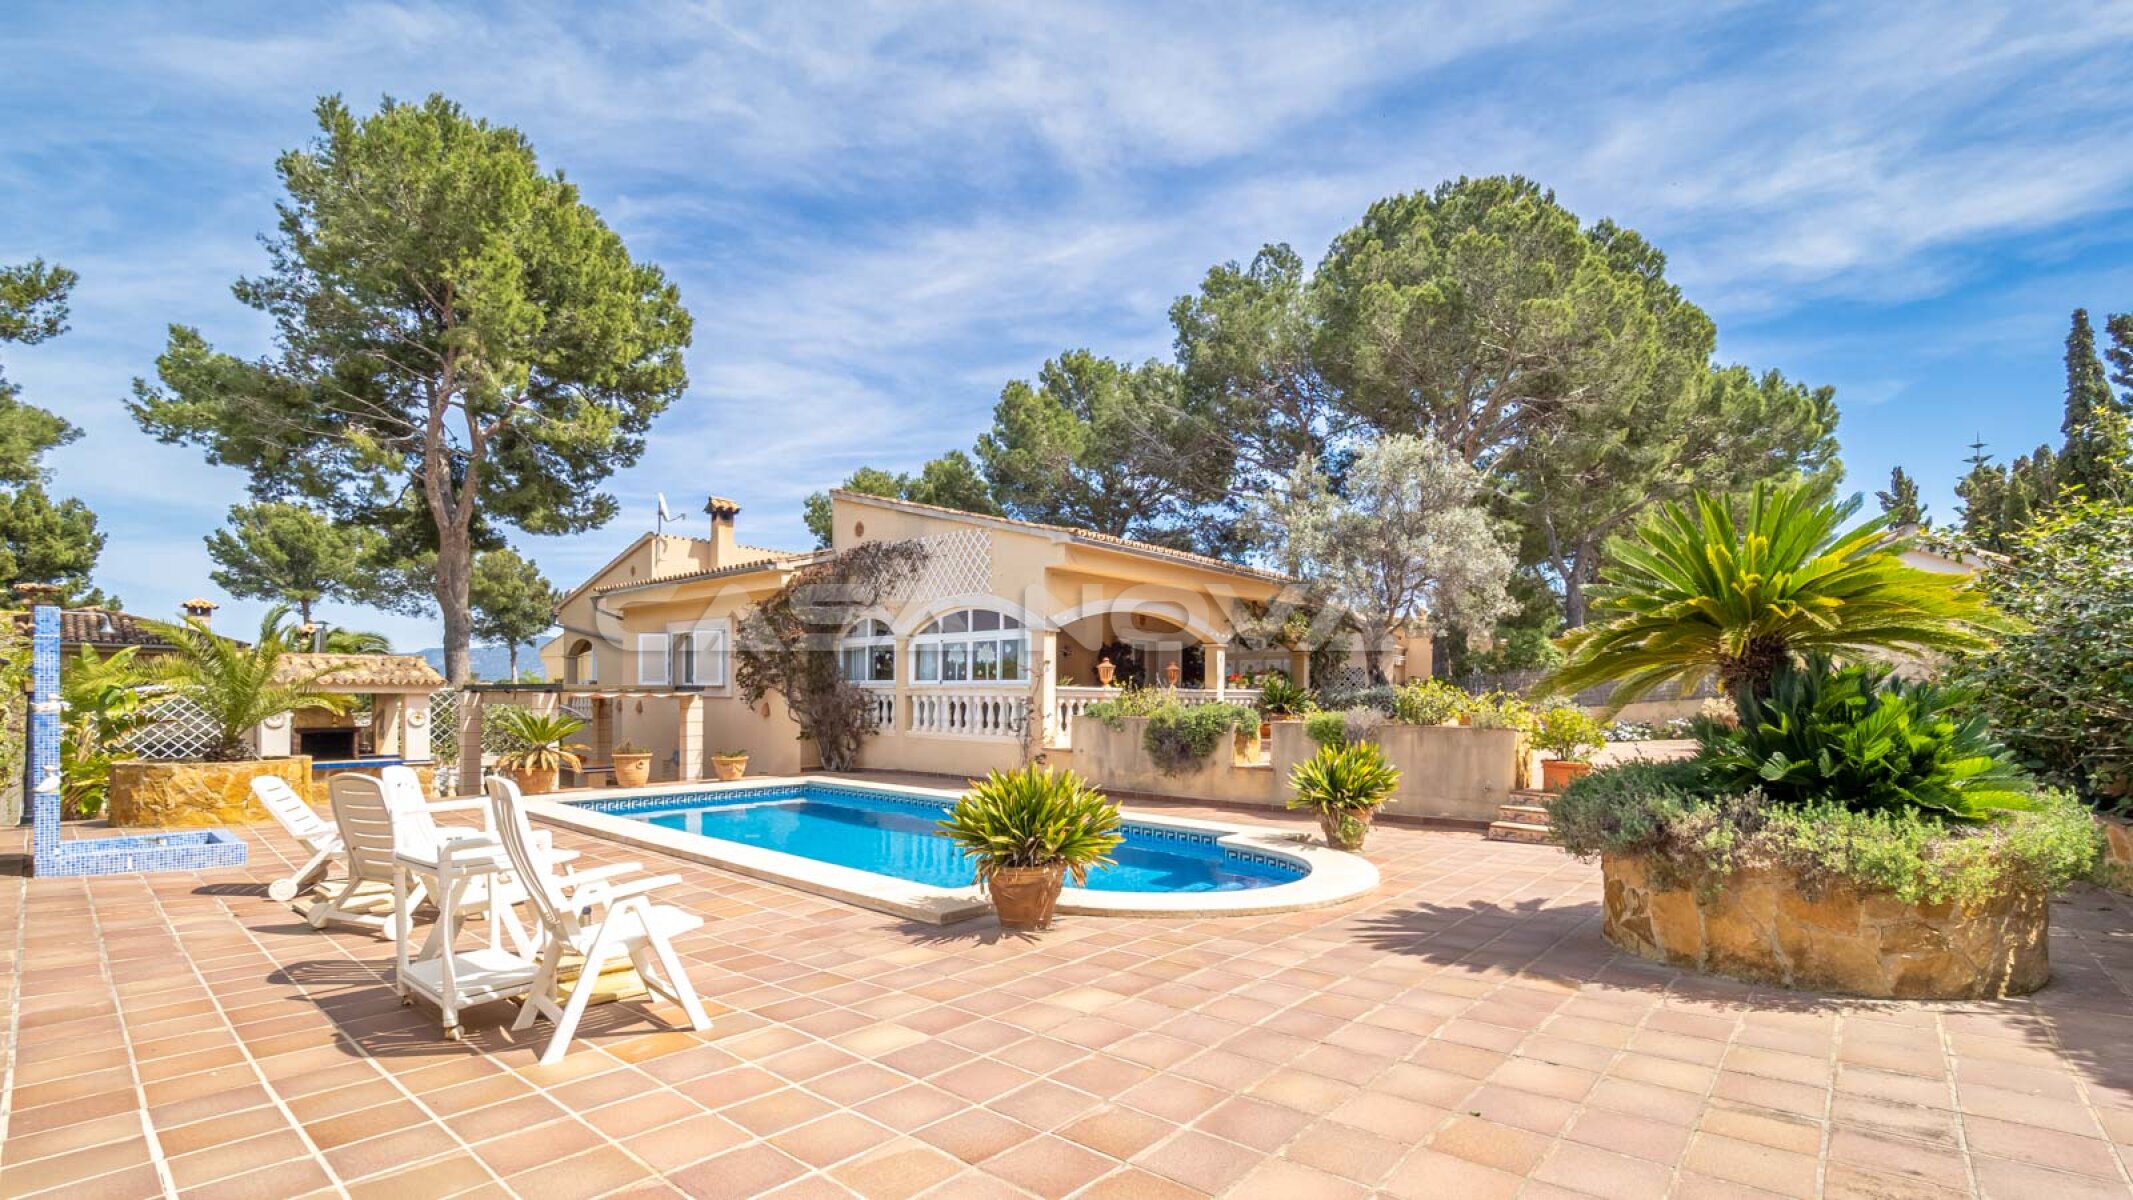 Sch�ne Villa Mallorca in sehr begehrter Wohnlage